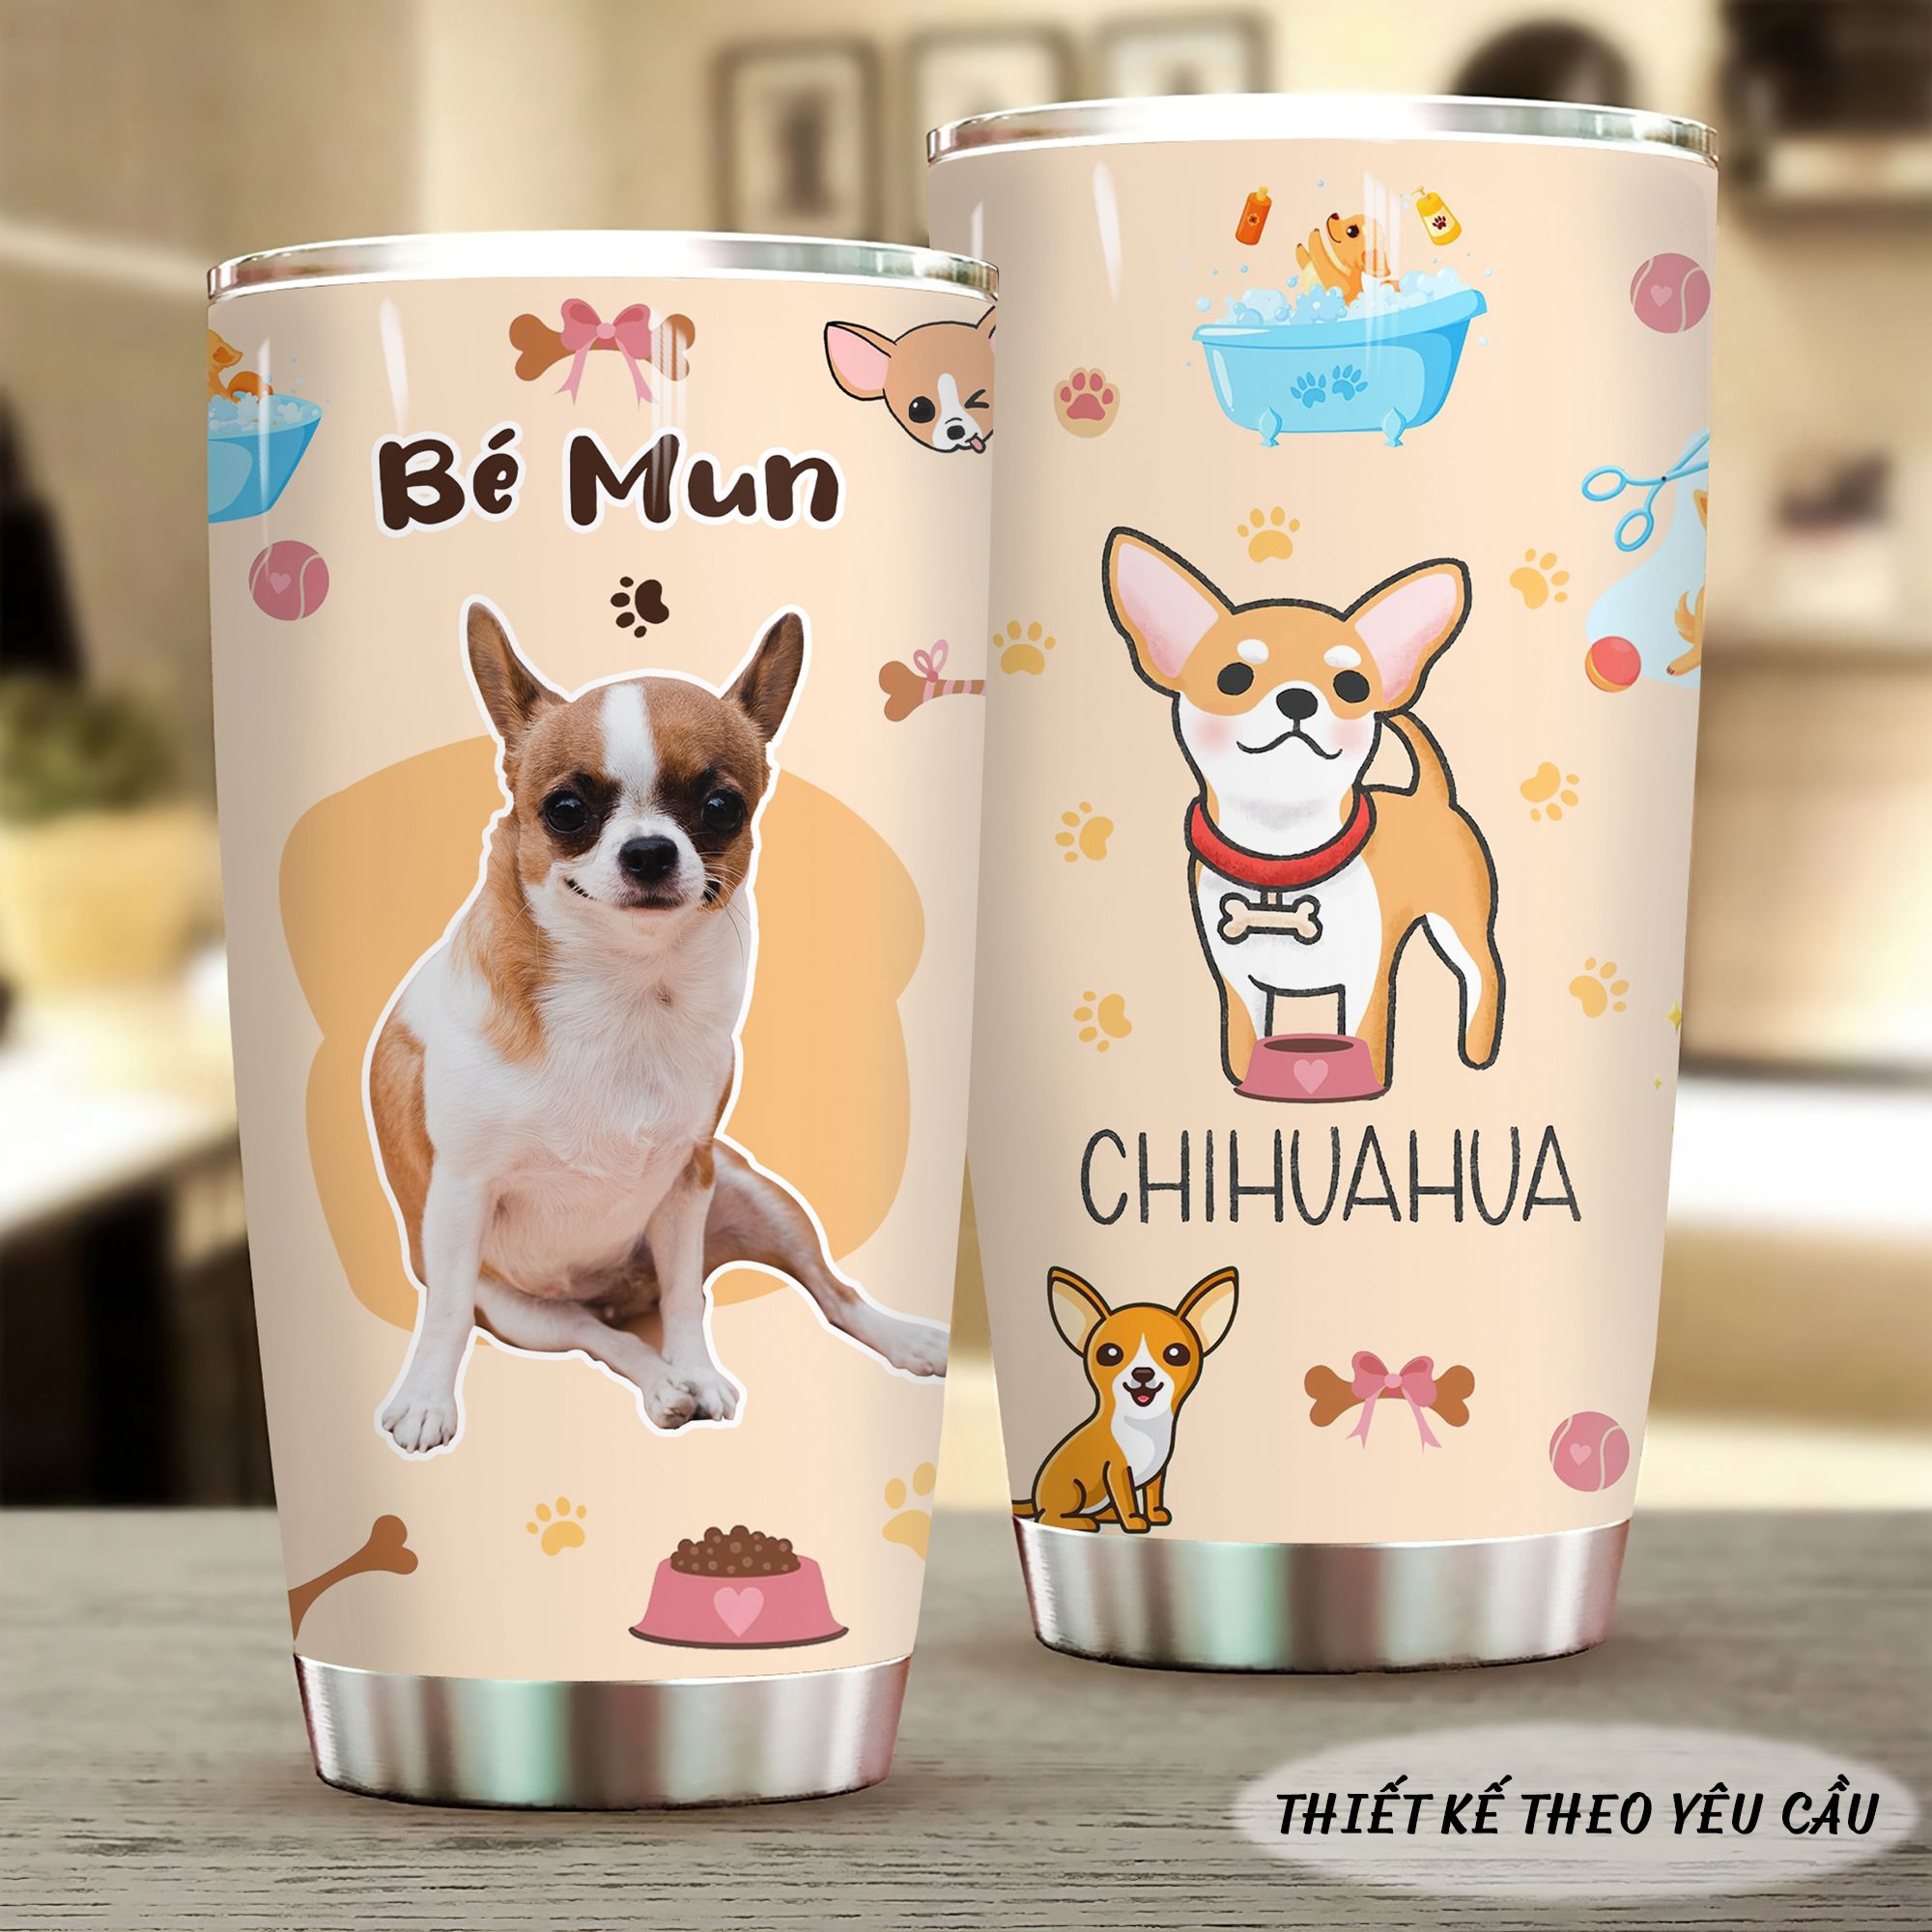  Chihuahua Pet Lover In Hình Và Thiết Kế Theo Yêu Cầu Go Drink In tên/ Ghép ảnh Cốc giữ nhiệt 600ml In tên, hình ảnh theo yêu cầu 